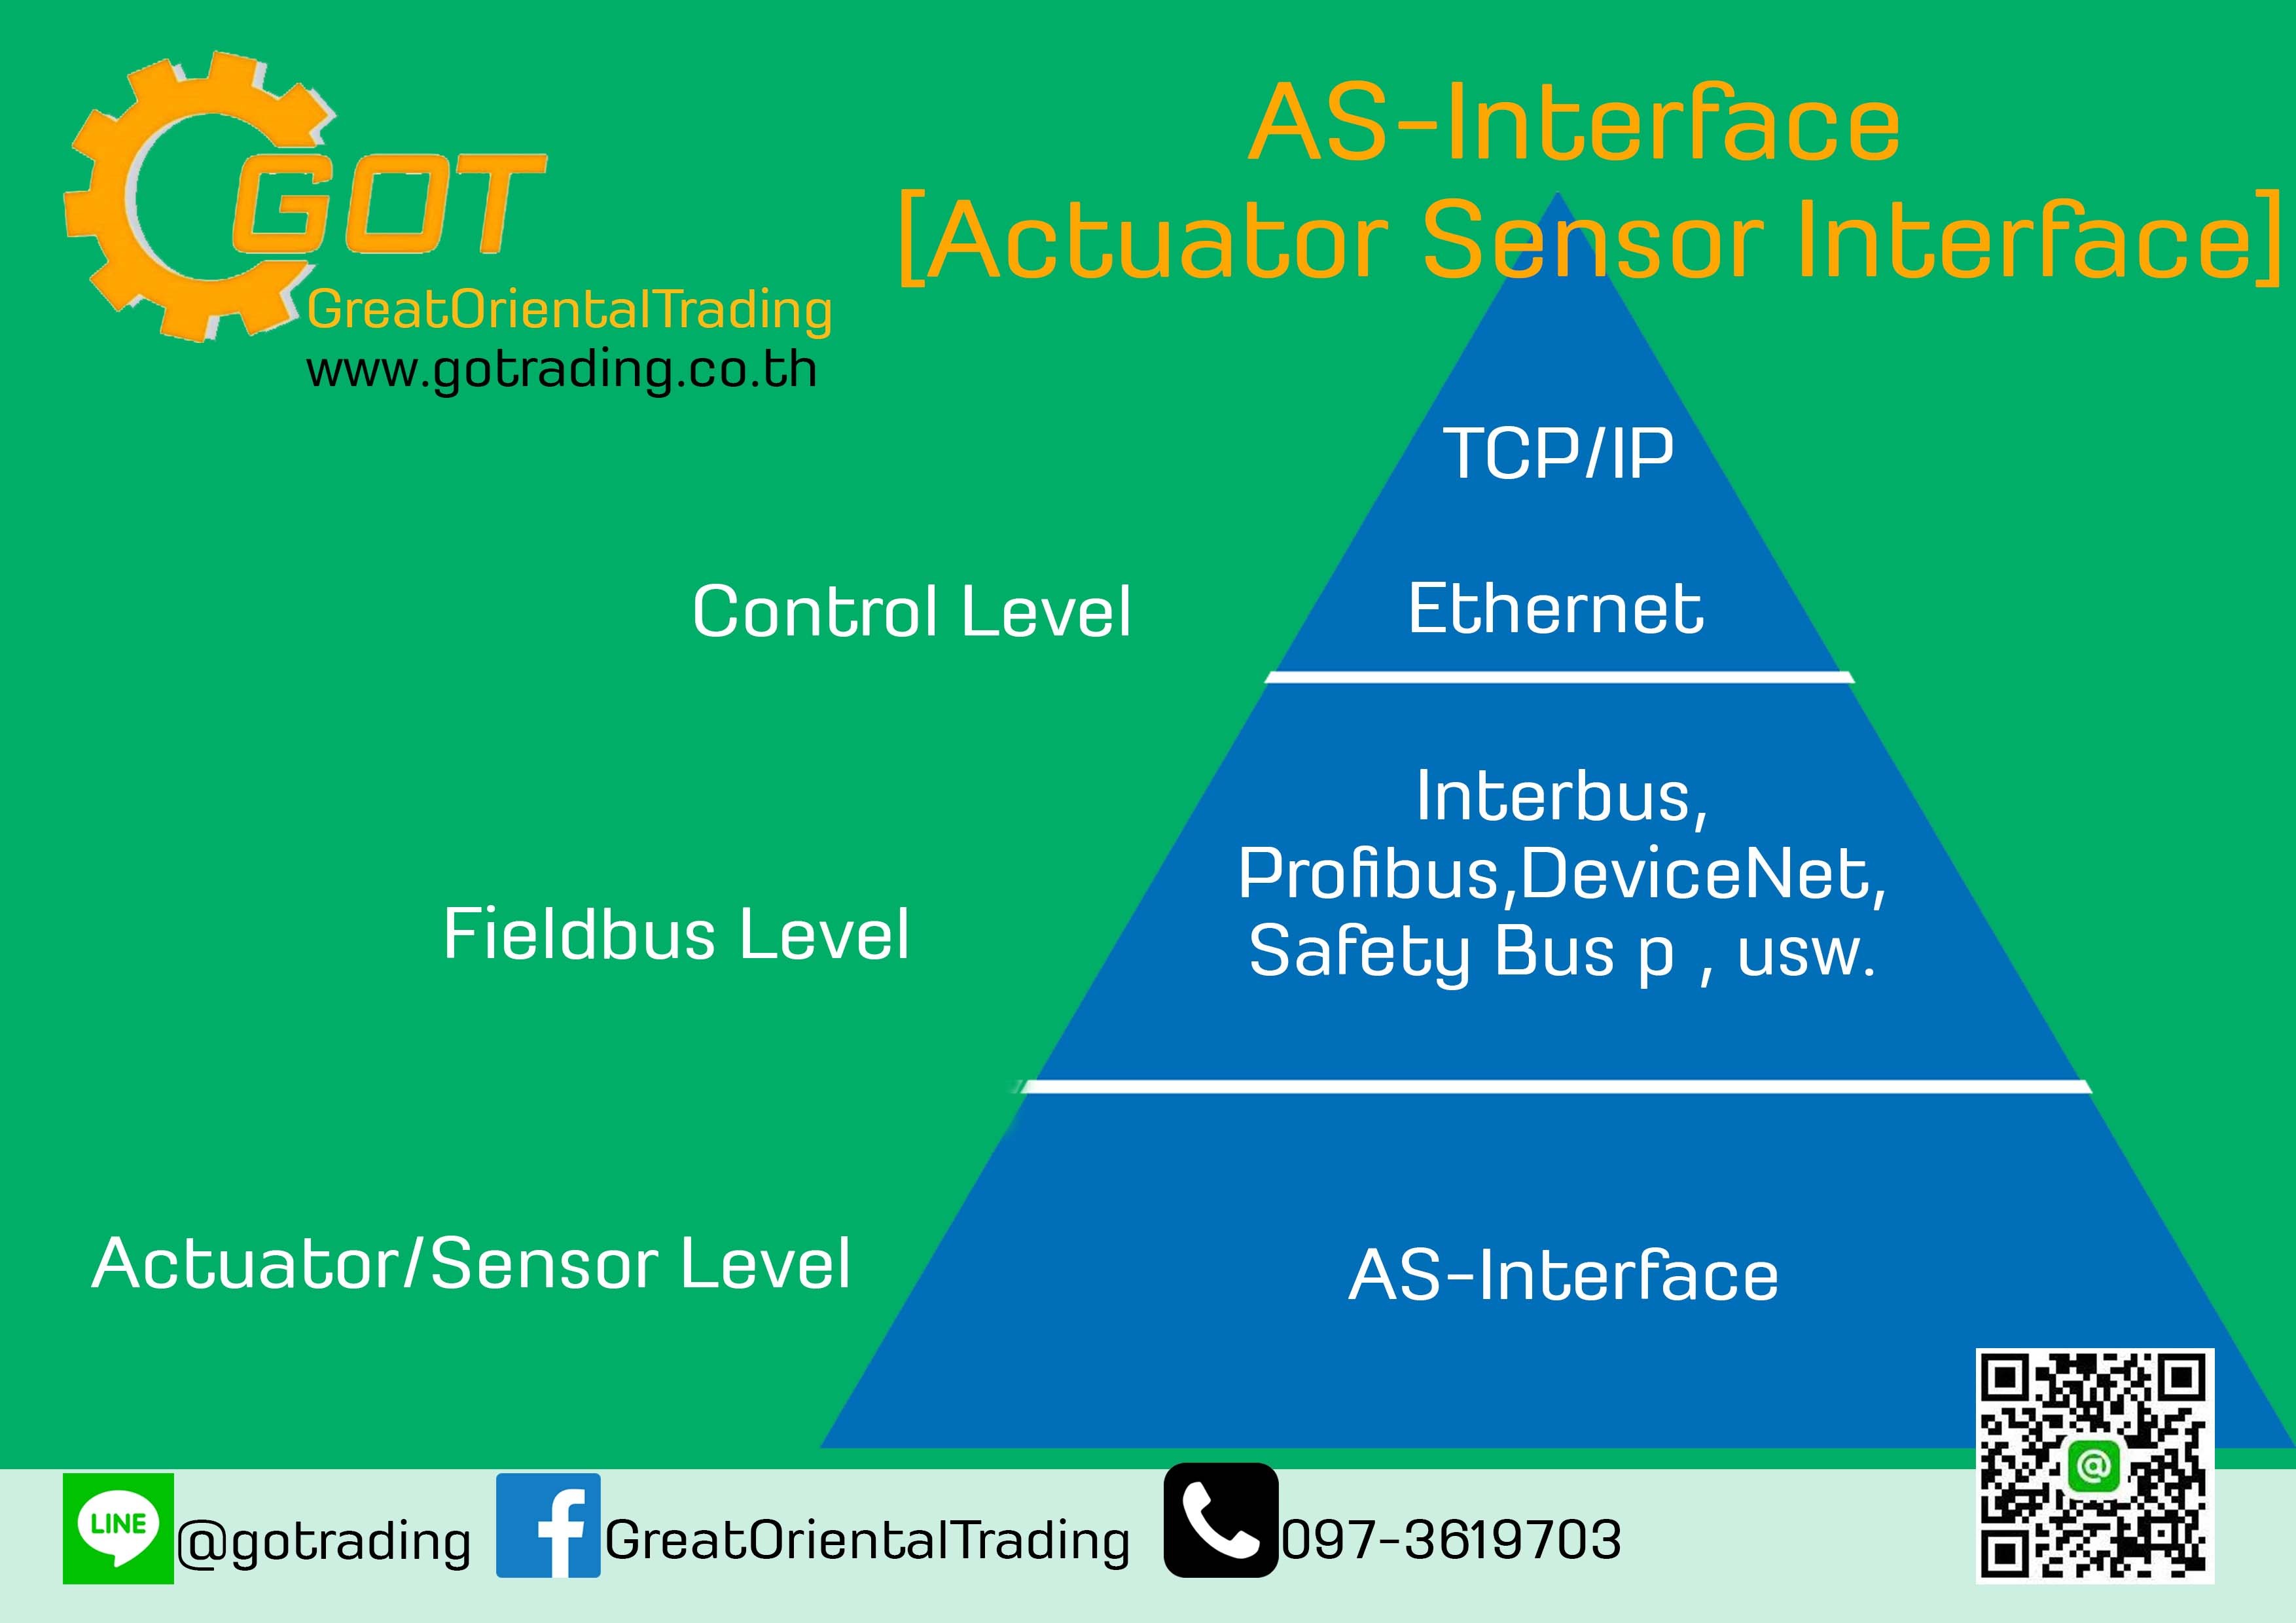 AS-Interface [Actuator Sensor Interface] ในแวดวงอุตสาหกรรมทั้งไทยและต่างประเทศ ระบบควบคุมอัตโนมัติจัดว่าเป็นระบบหนึ่งที่มีความสําคัญยิ่งใน กระบวนการผลิต ดังนั้น งานปรับปรุงและบํารุงรักษาระบบจึงเป็นหน้าที่สําคัญที่จ้ะองทําให้ระบบสามารถทํางานได้อย่างมีประสิทธิภาพและได้ประสิทธิผล